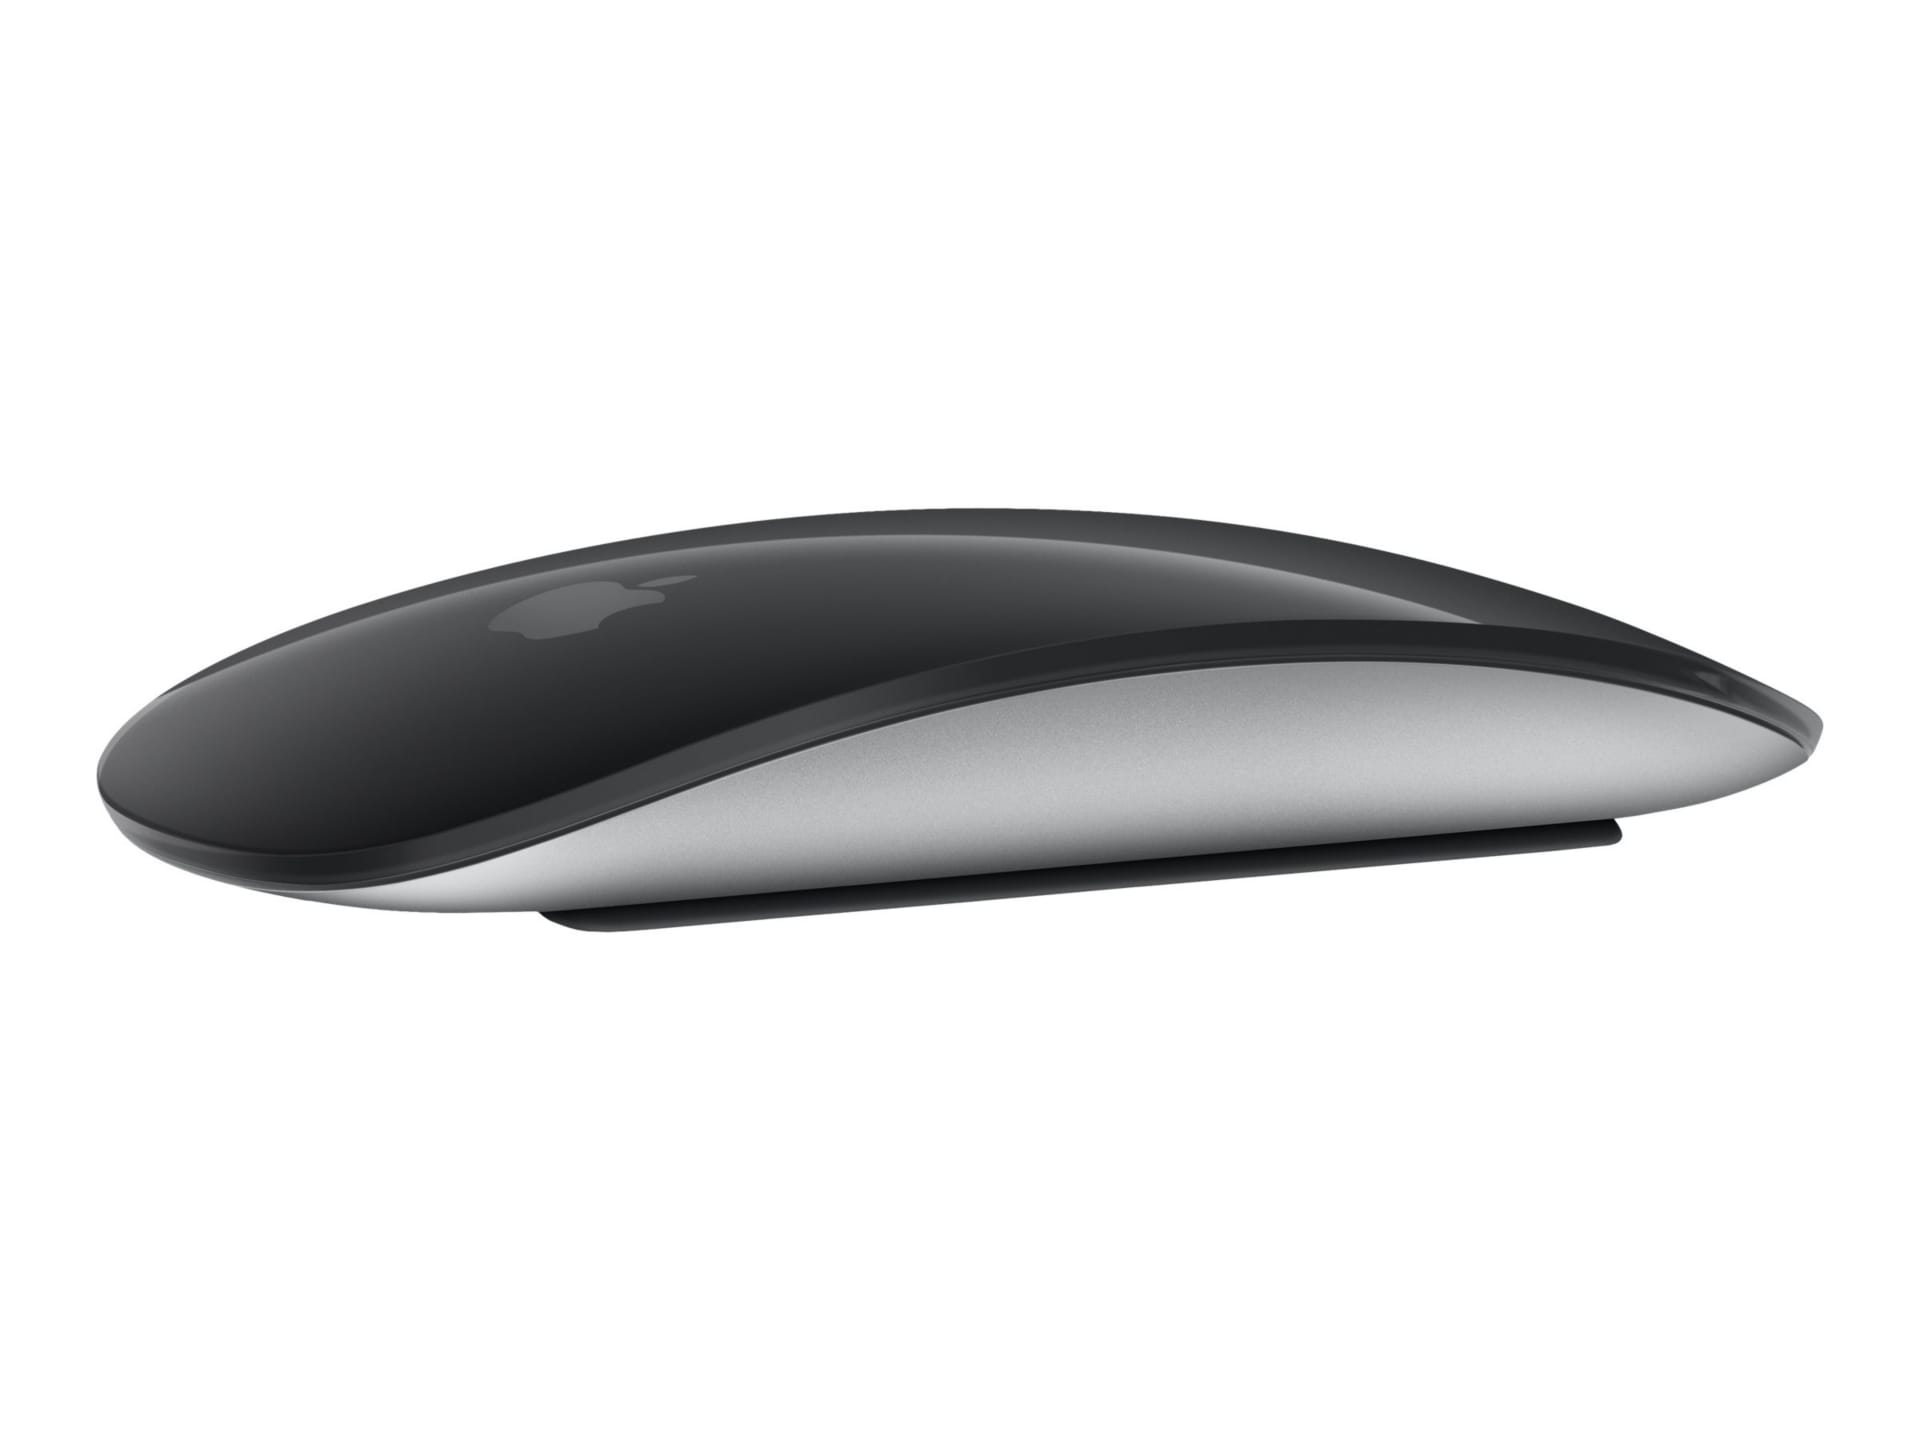 Apple Magic Mouse - souris - Bluetooth - noir